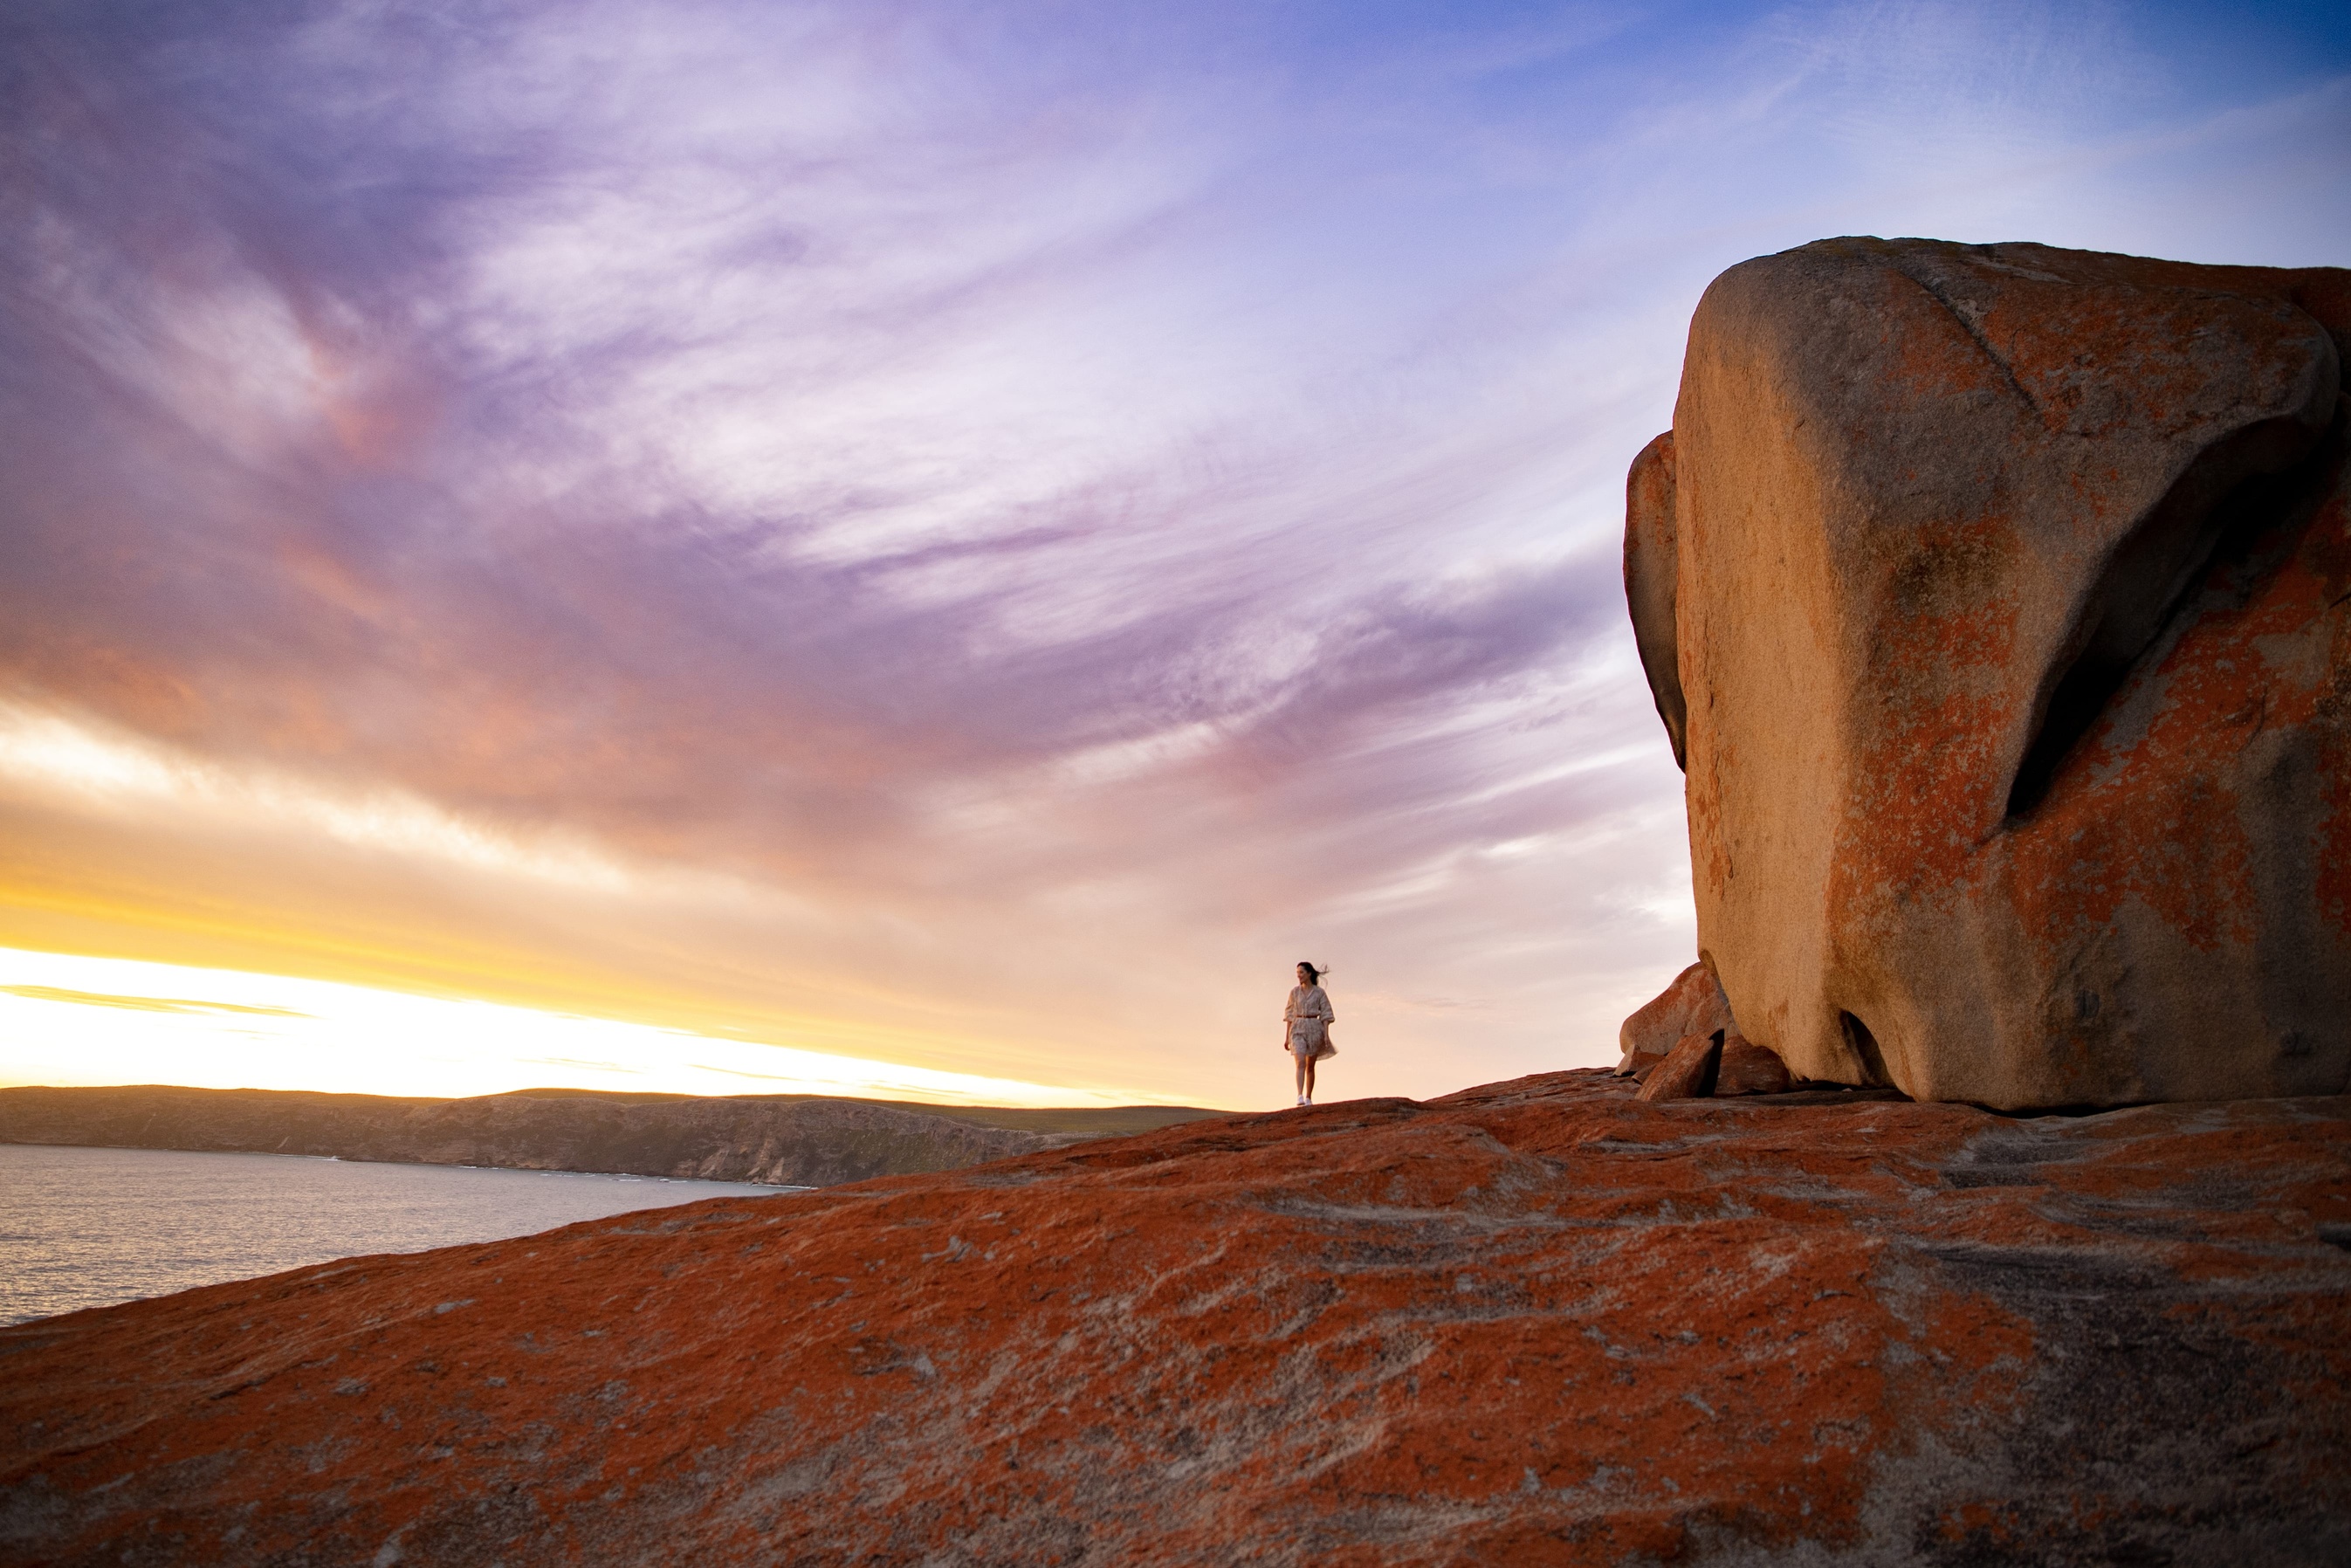 壮观的 Remarkable Rocks 巨石群， 是费莲达蔡司国家公园最知名的奇岩景点。 （©Tourism Australia）